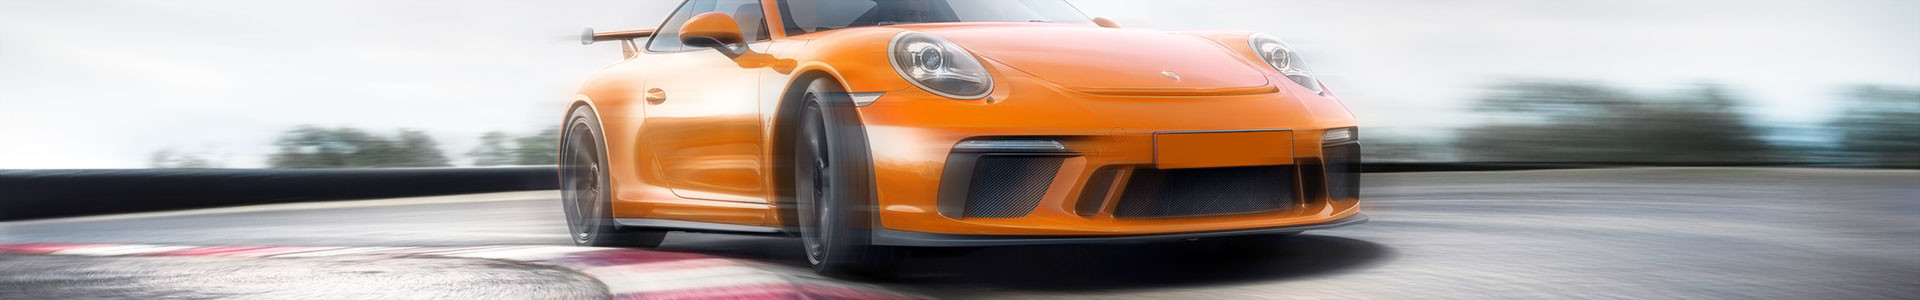 PcarWise Porsche Knowledge Portal | Porsche Repair Shop | Common Problems | Buying Guides | Vintage Porsche Specialists | PCA | Track Days | Porsche Dealers | News